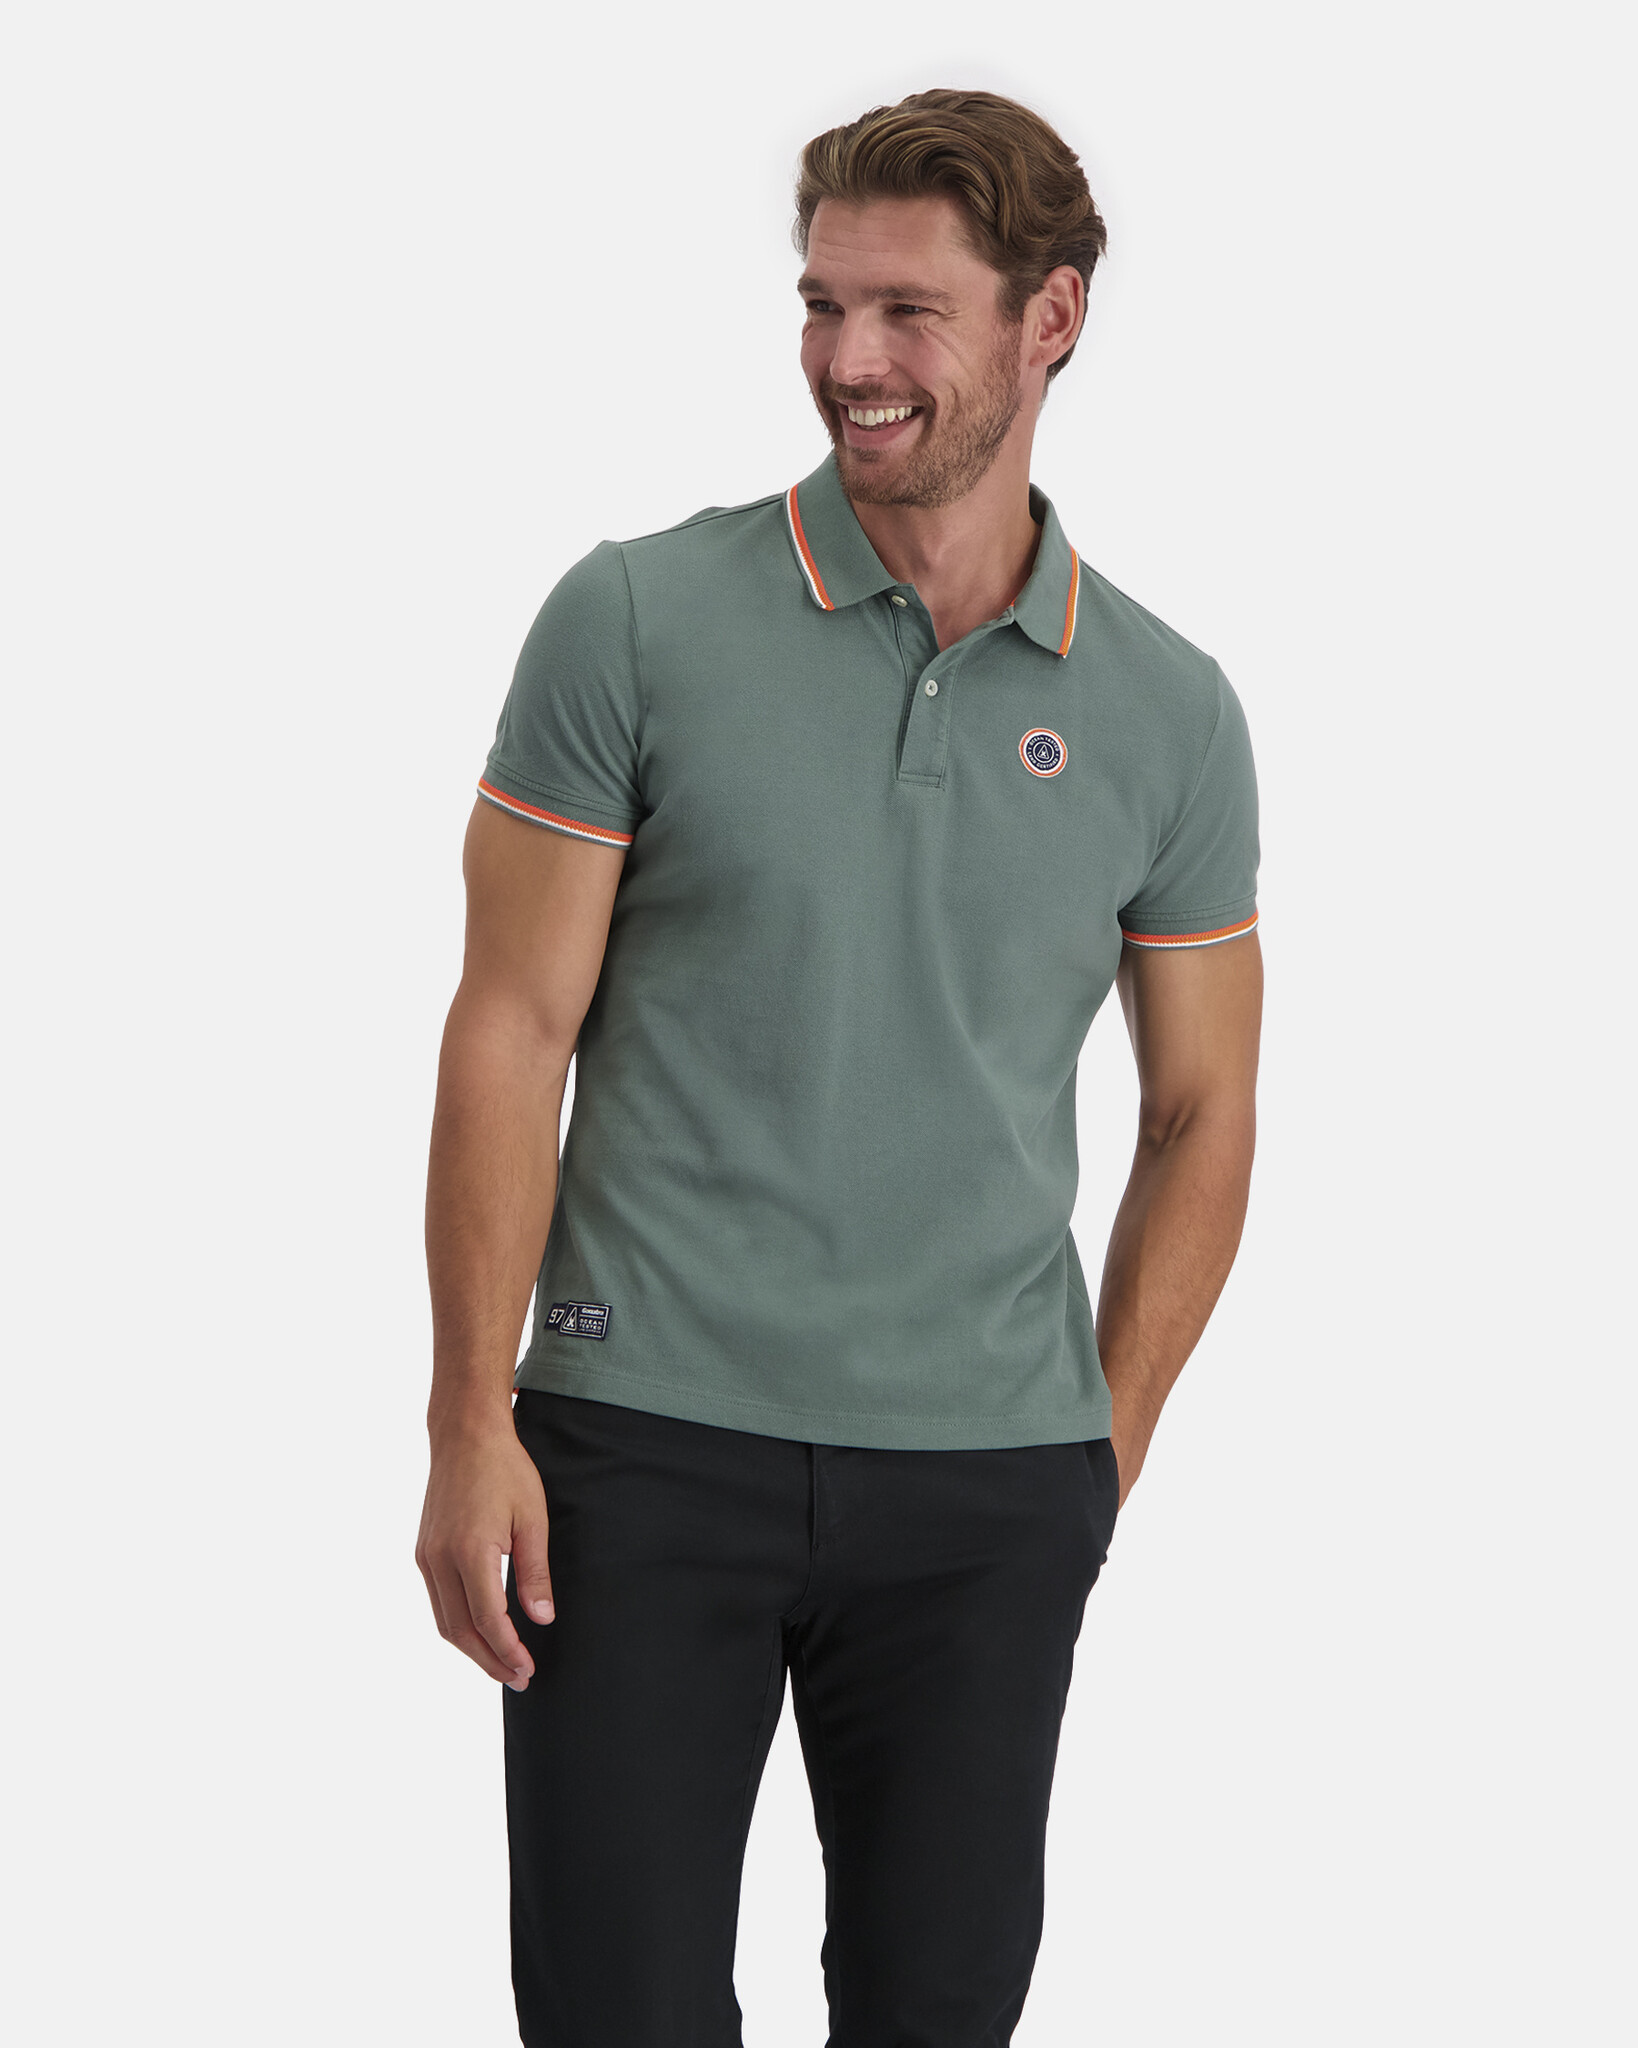 Piqué-Poloshirt mit normaler Passform und kontrastierenden Strickstreifen an Kragen und Manschetten